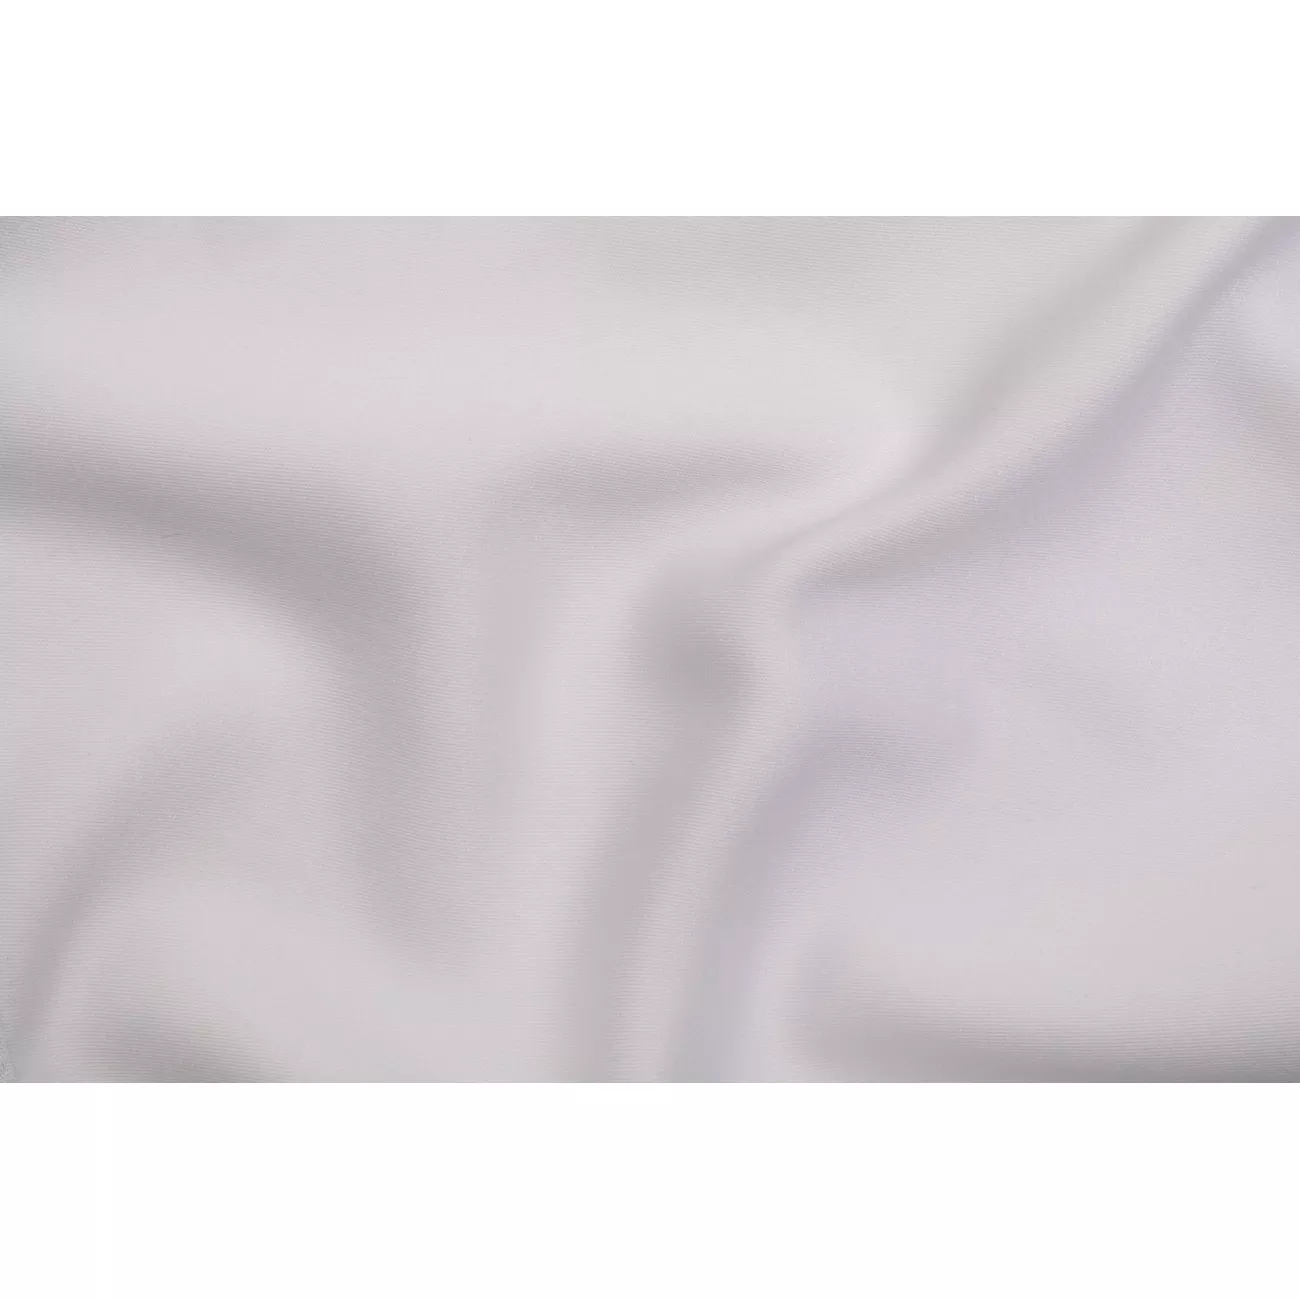 Próbka tkaniny obrusowej Satin dwustronna biała/szara - 1